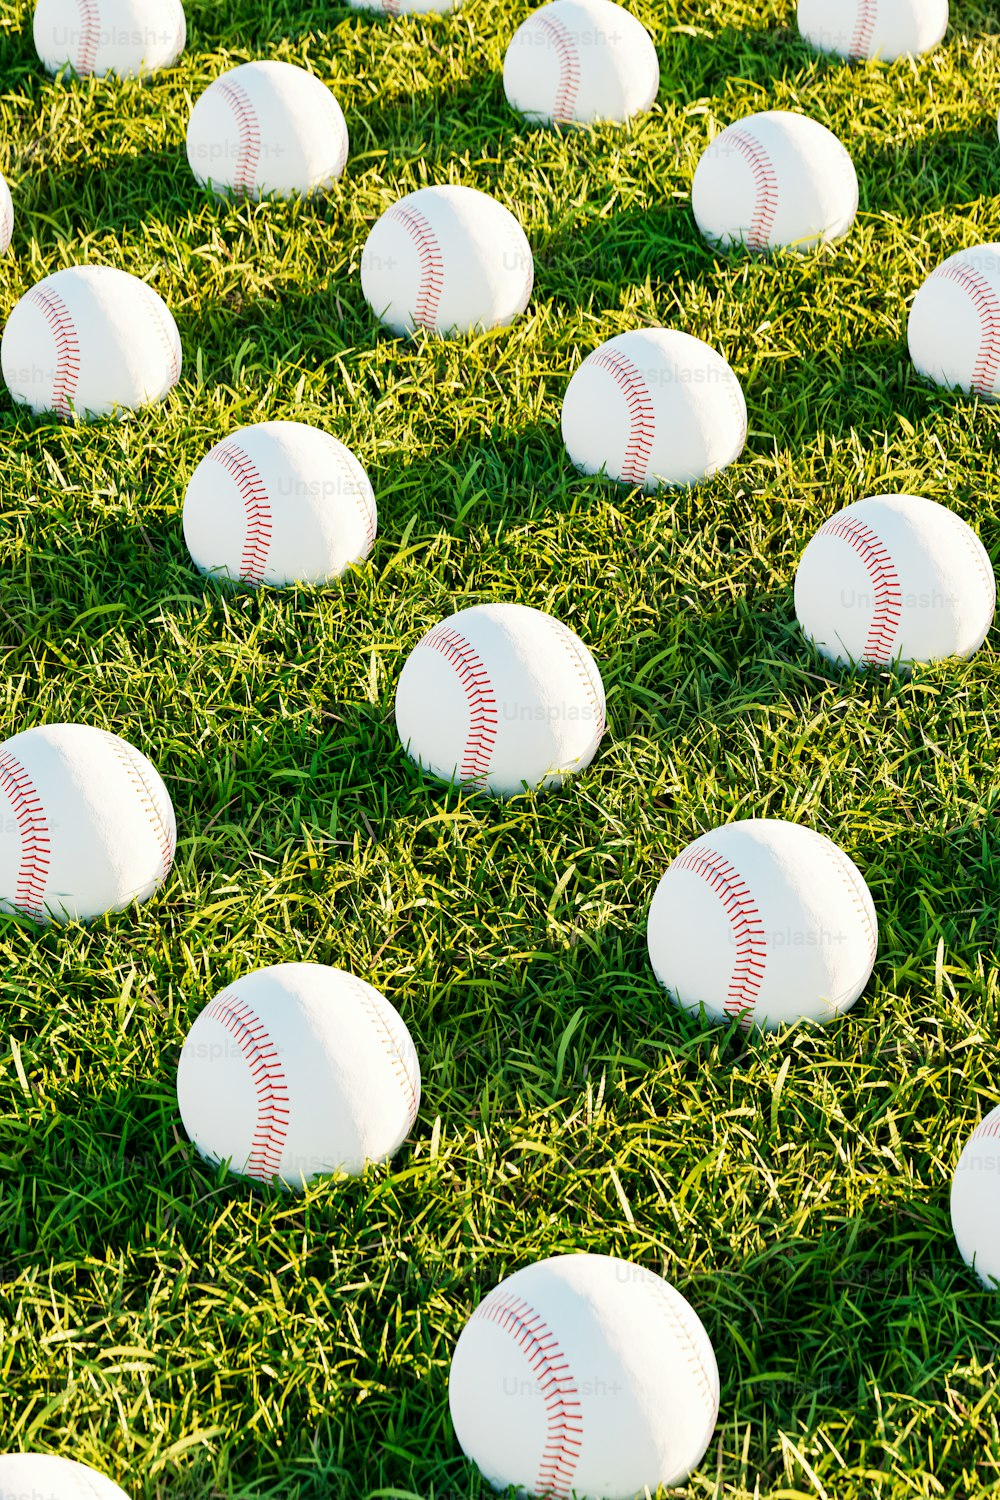 Un campo pieno di palle da baseball bianche adagiate sopra l'erba verde